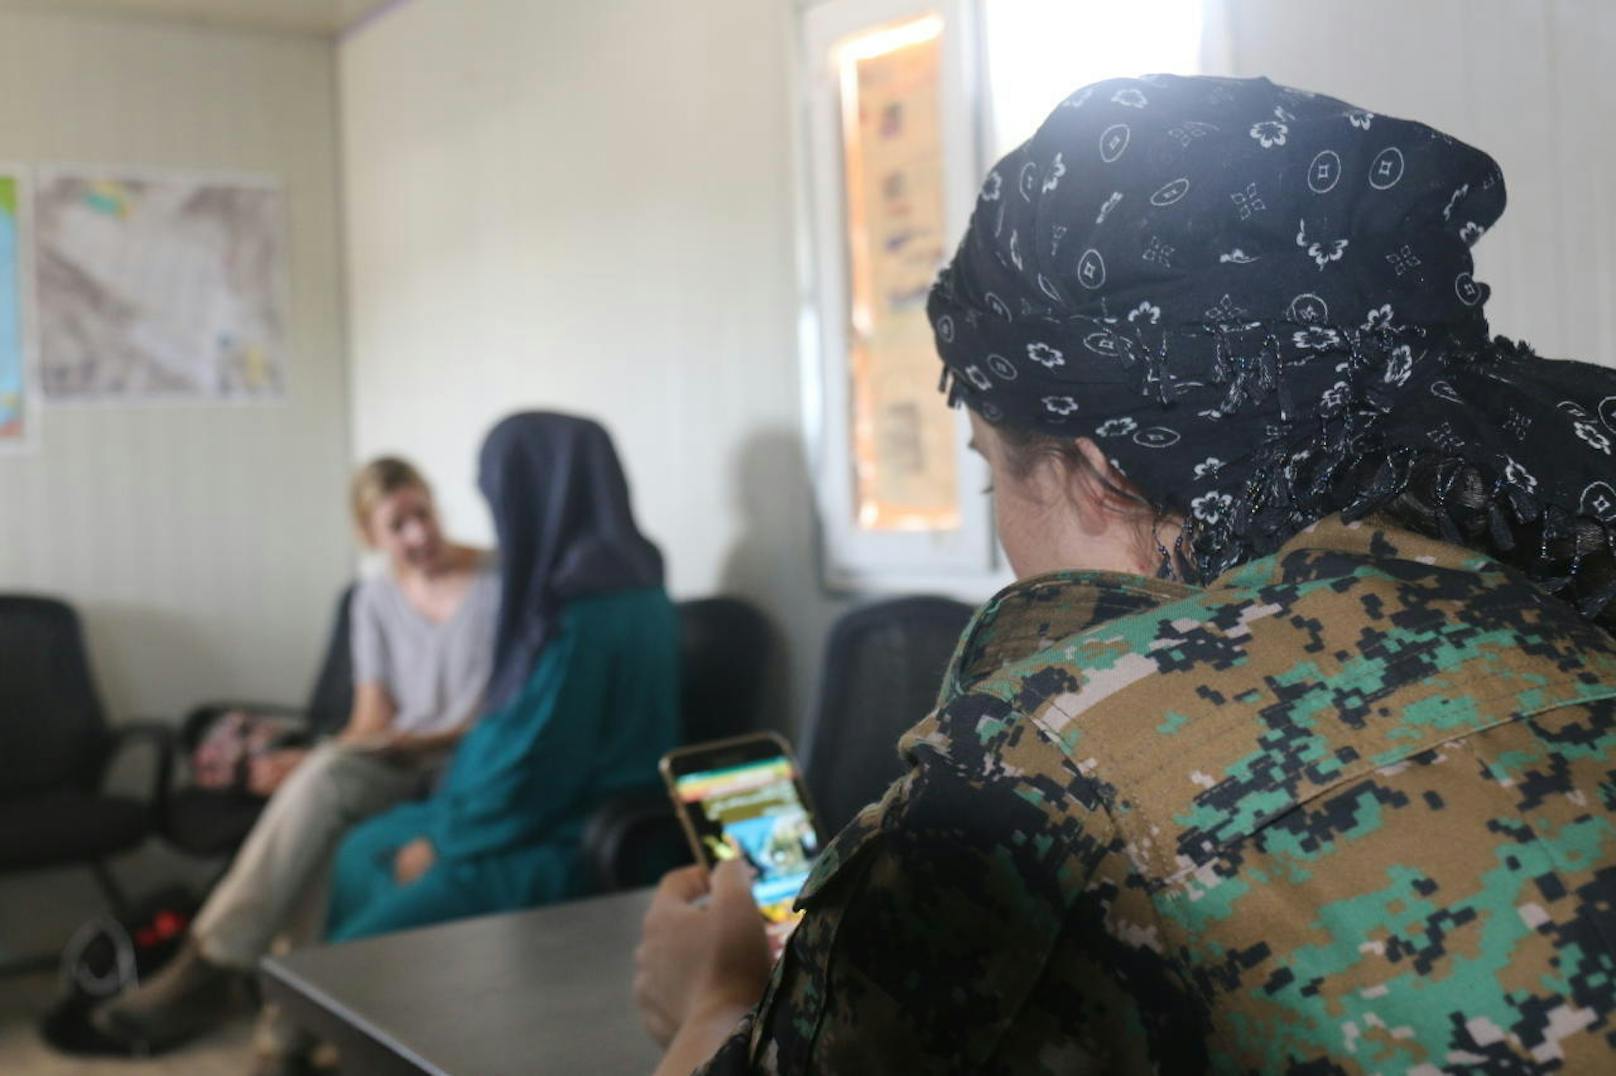 Die Aufseherinnen der Kurdenmiliz YPG seien gut zu ihr. "Sie haben viel Herz, die Kurden", sagt sie. Dennoch komme es zwischen den Frauen im Camp zu Konflikten. Einige Insassinnen lebten noch immer nach den extremen Scharia-Regeln des IS. Selena will mit ihren Kindern möglichst schnell nach Deutschland zurück.